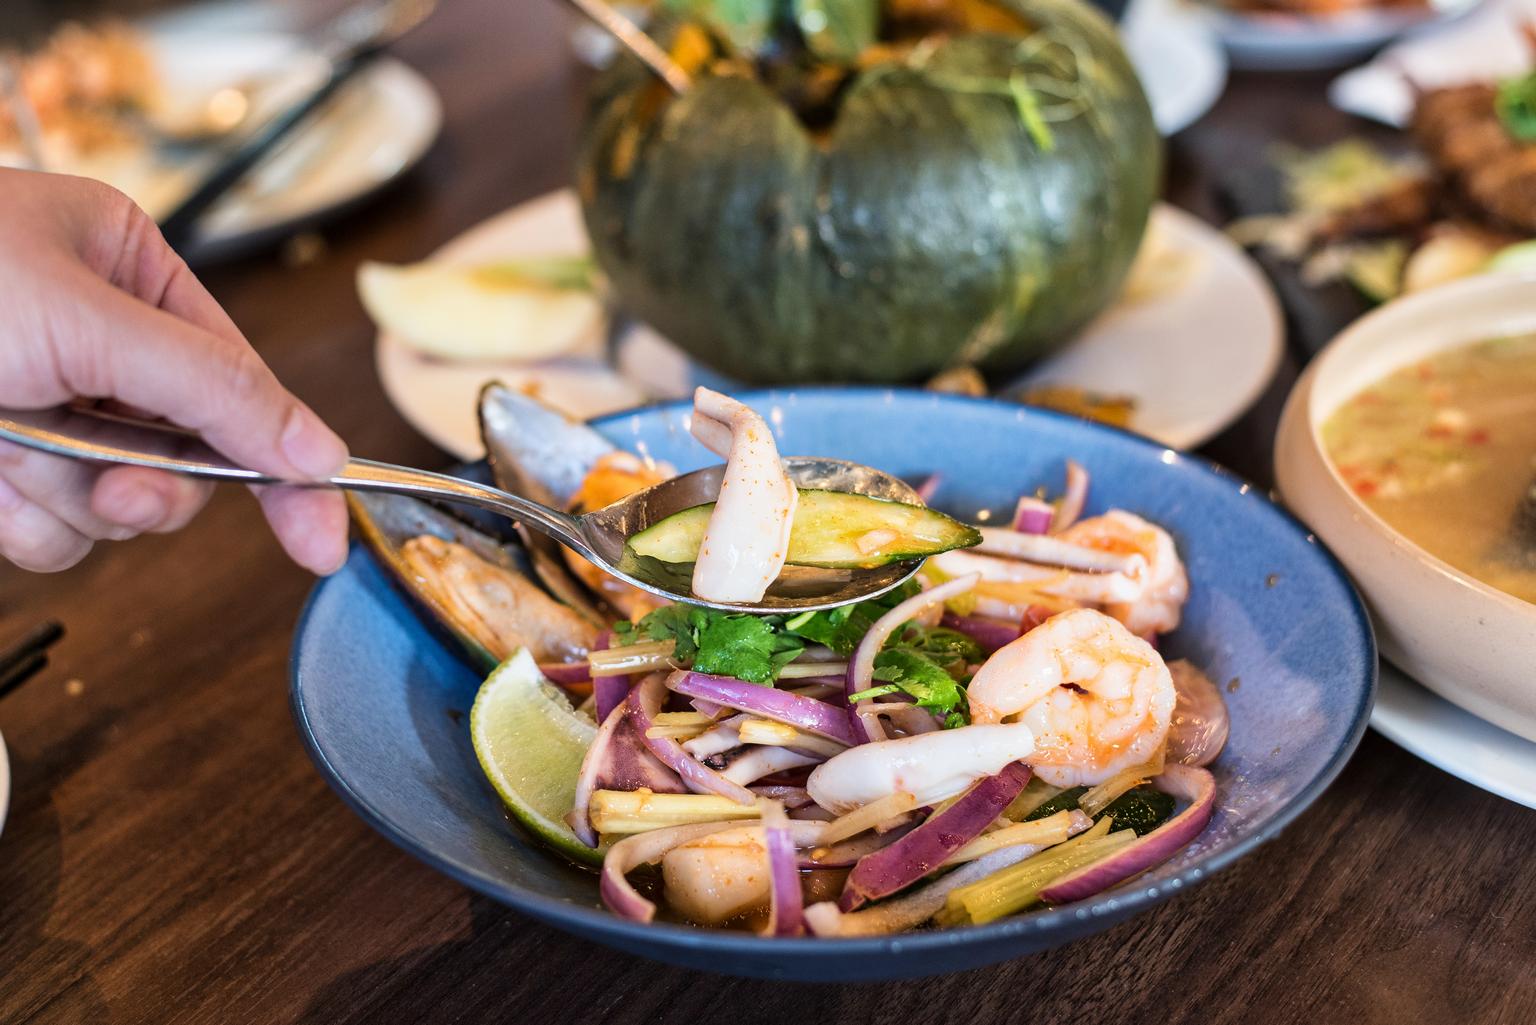 心泰Pro 原創泰國料理 深受旅客和當地人喜愛 道地泰式料理新選擇